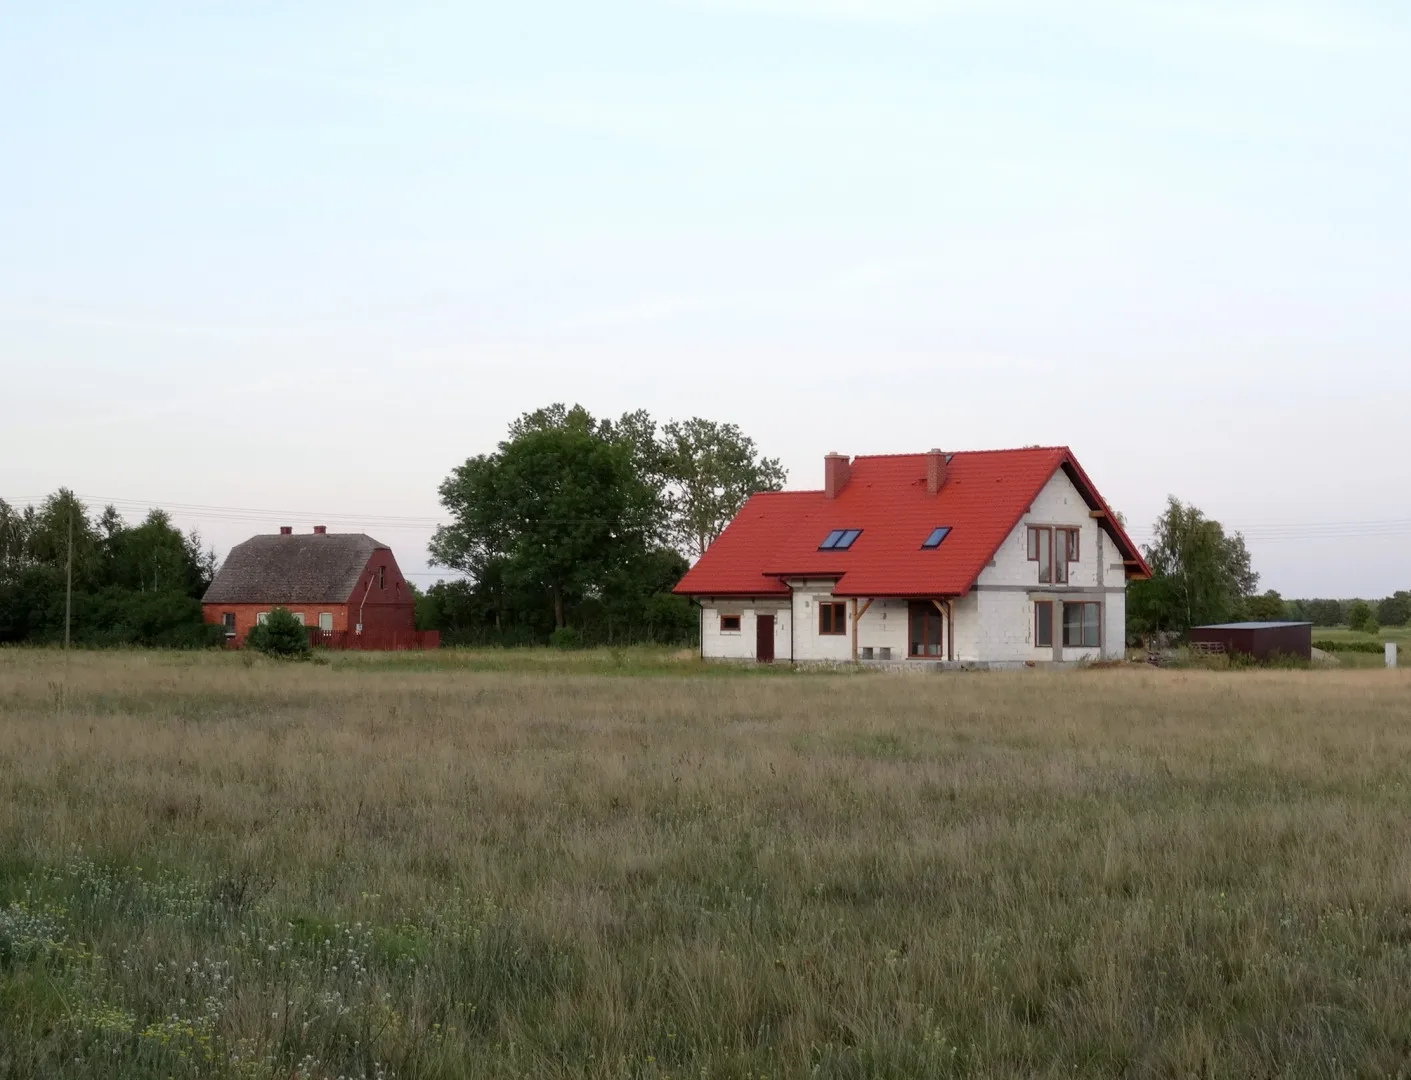 Photo showing: Januszkowo, gmina Nowa Wieś Wielka, powiat bydgoski